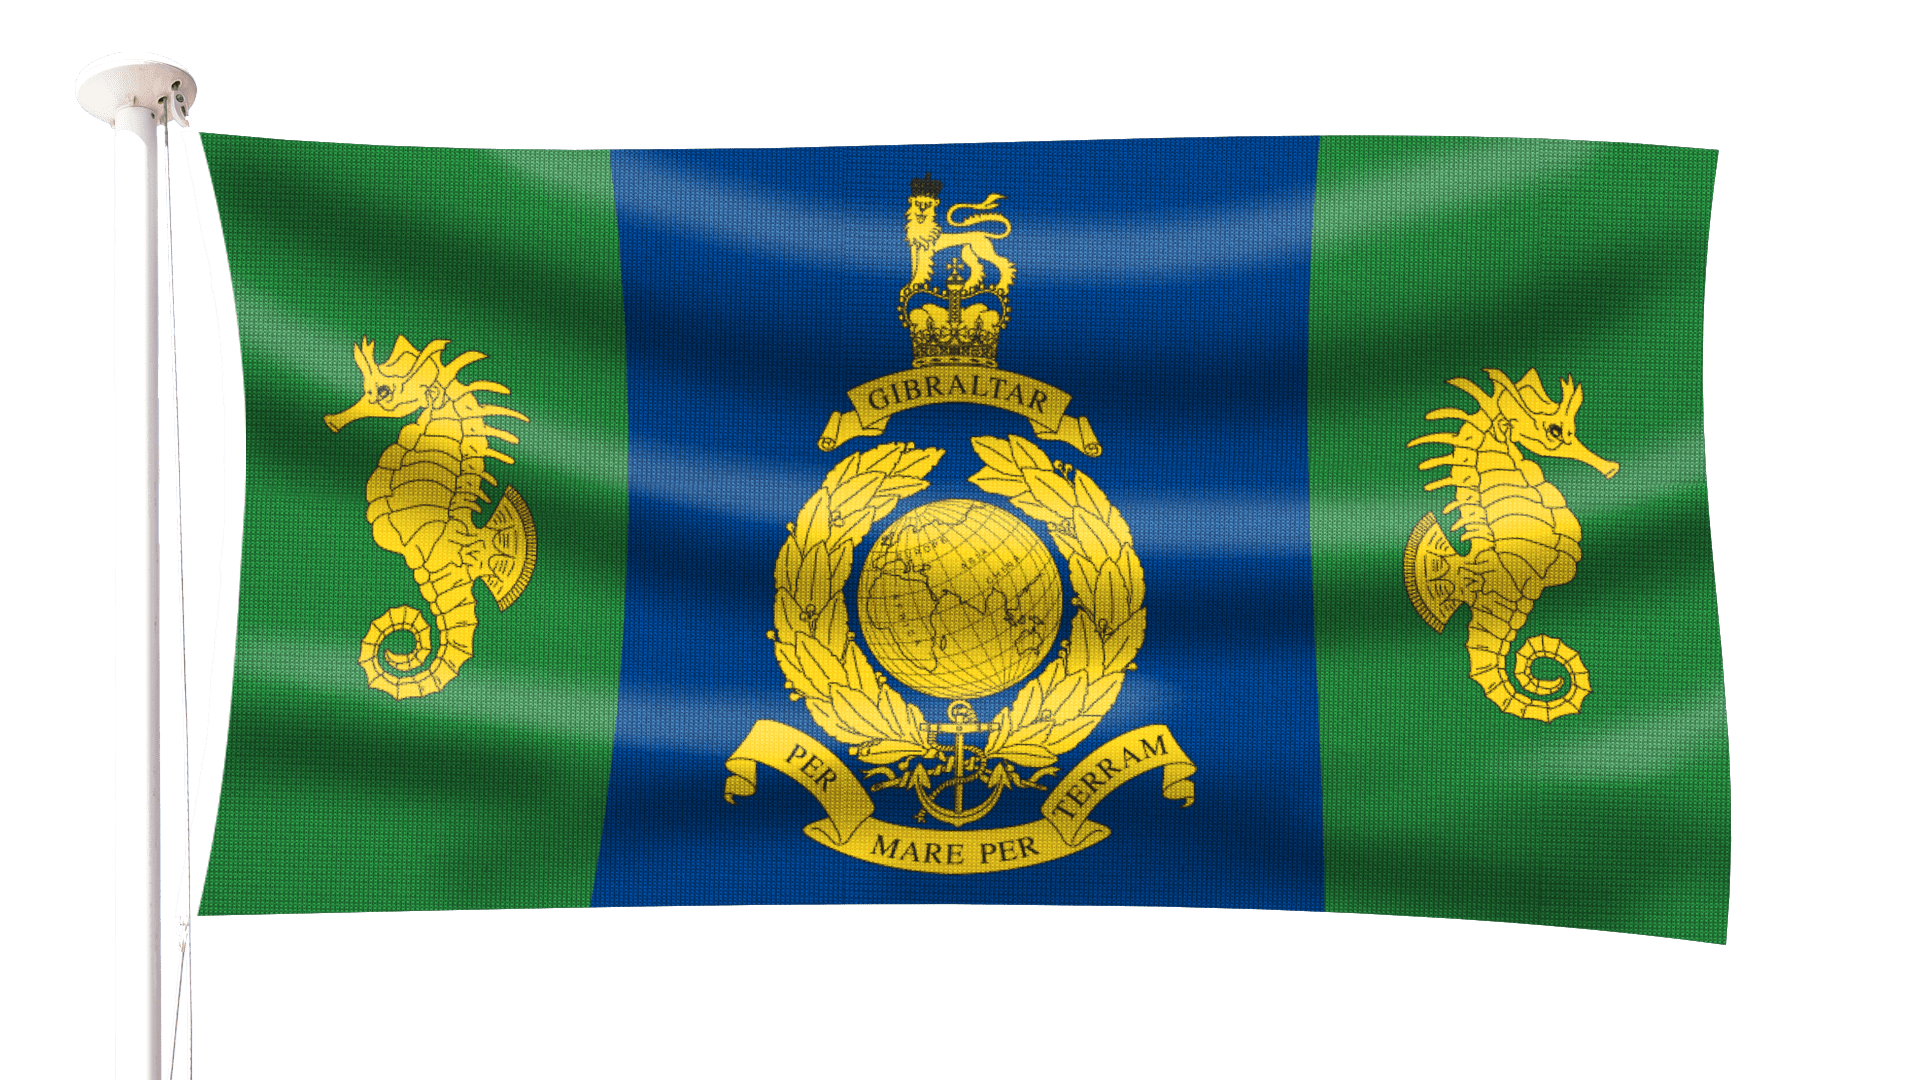 Royal Marines Commando Logistics Regiment Flag - Hampshire Flag Company